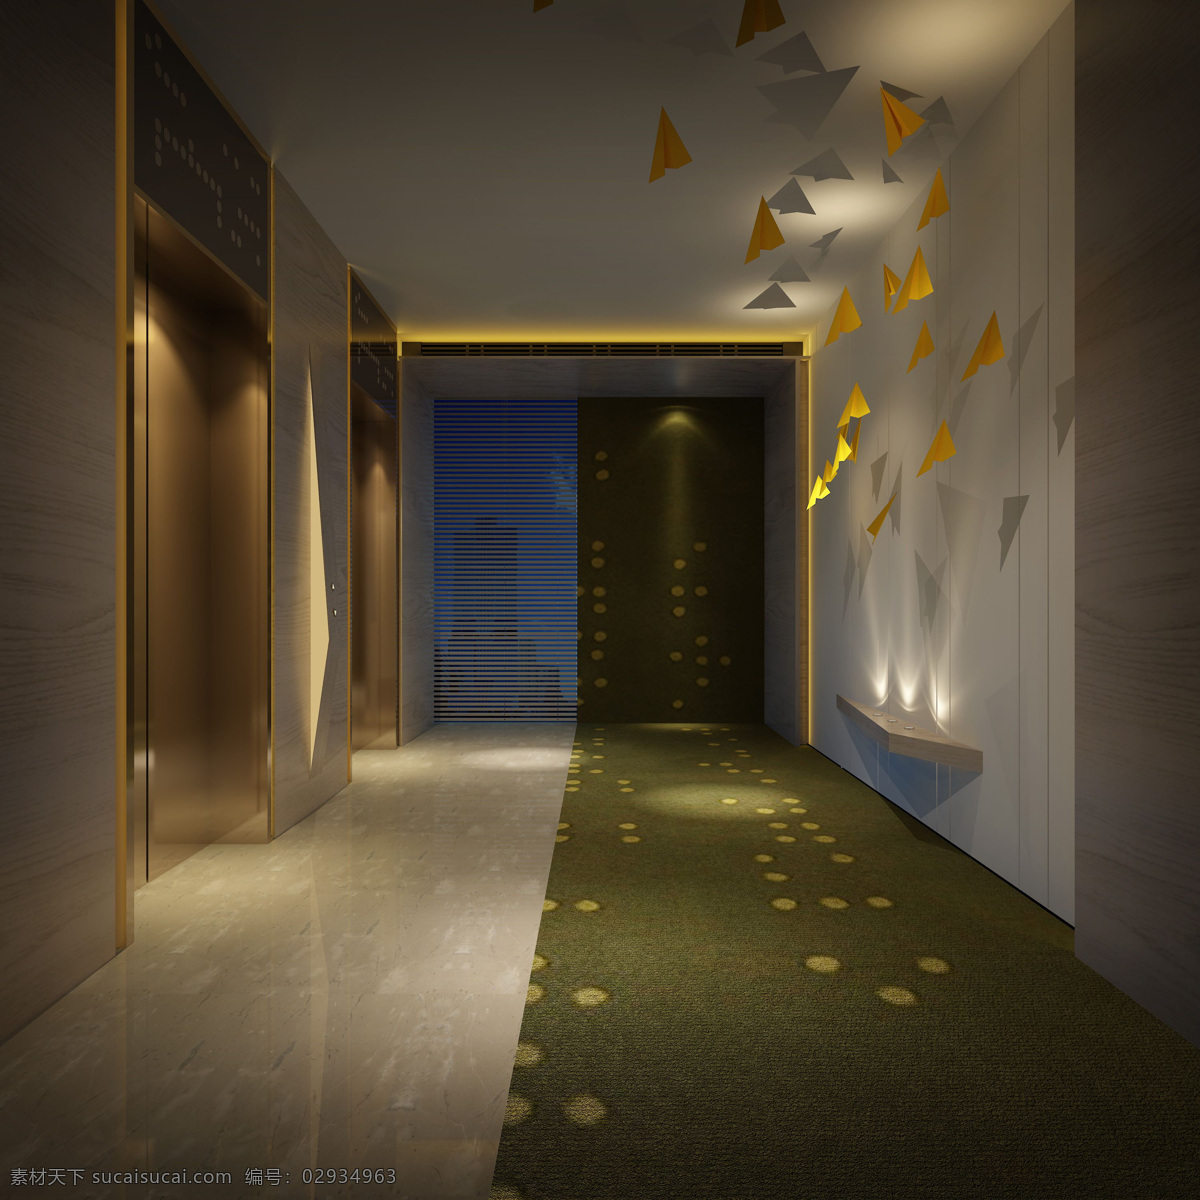 时尚 创意 暗色 调 酒店 走廊 装修 效果图 创意陶瓷地板 暗色调 成墙面 白色集成吊顶 创意背景墙